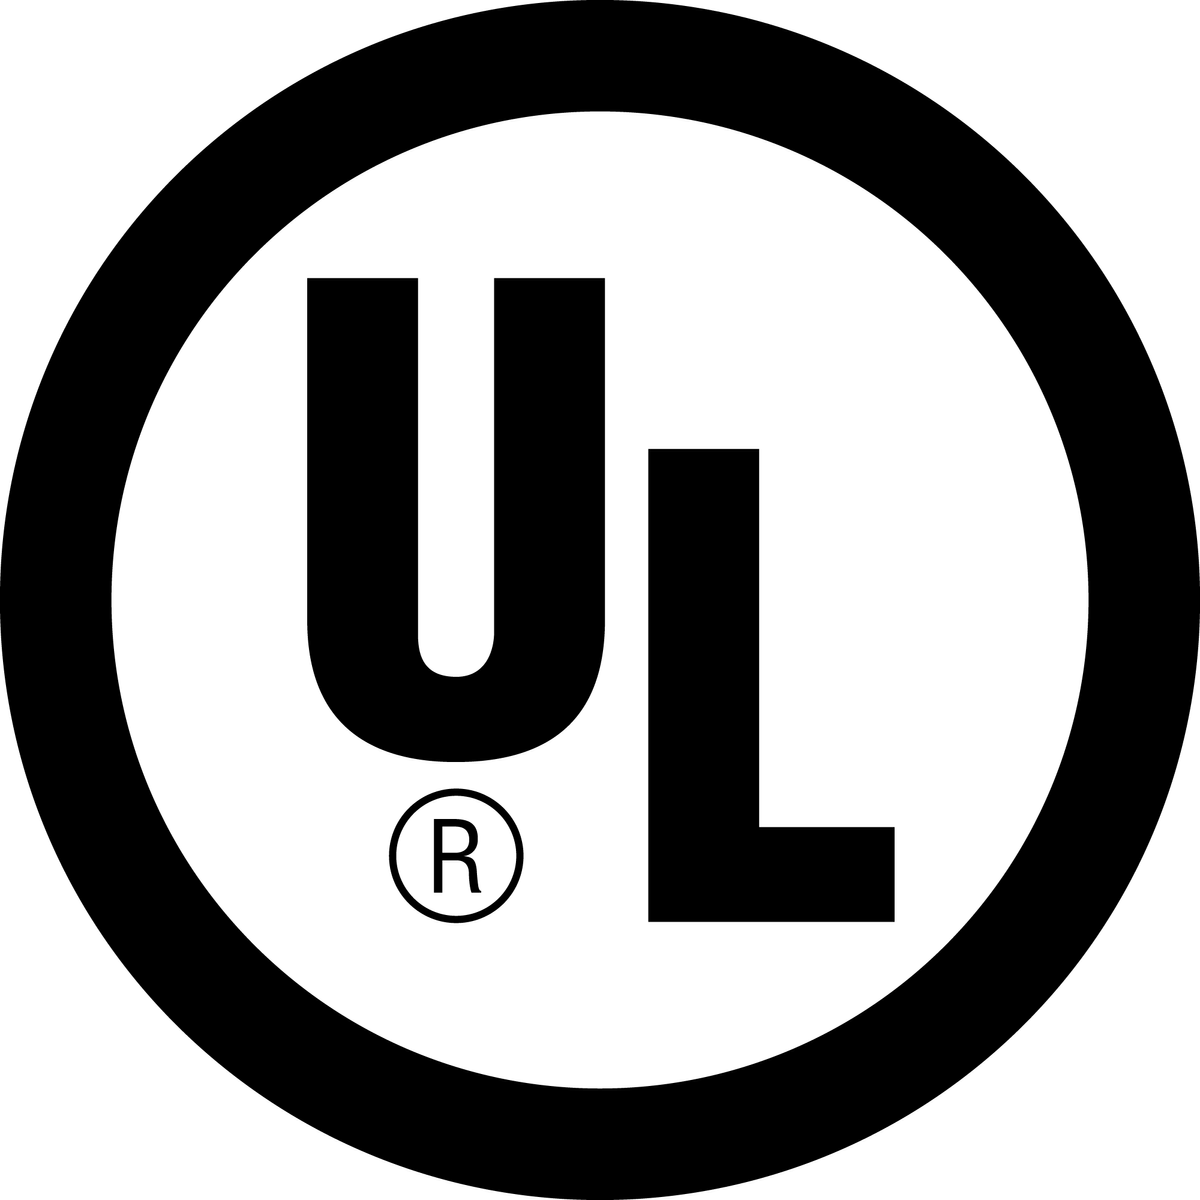 UL logo large